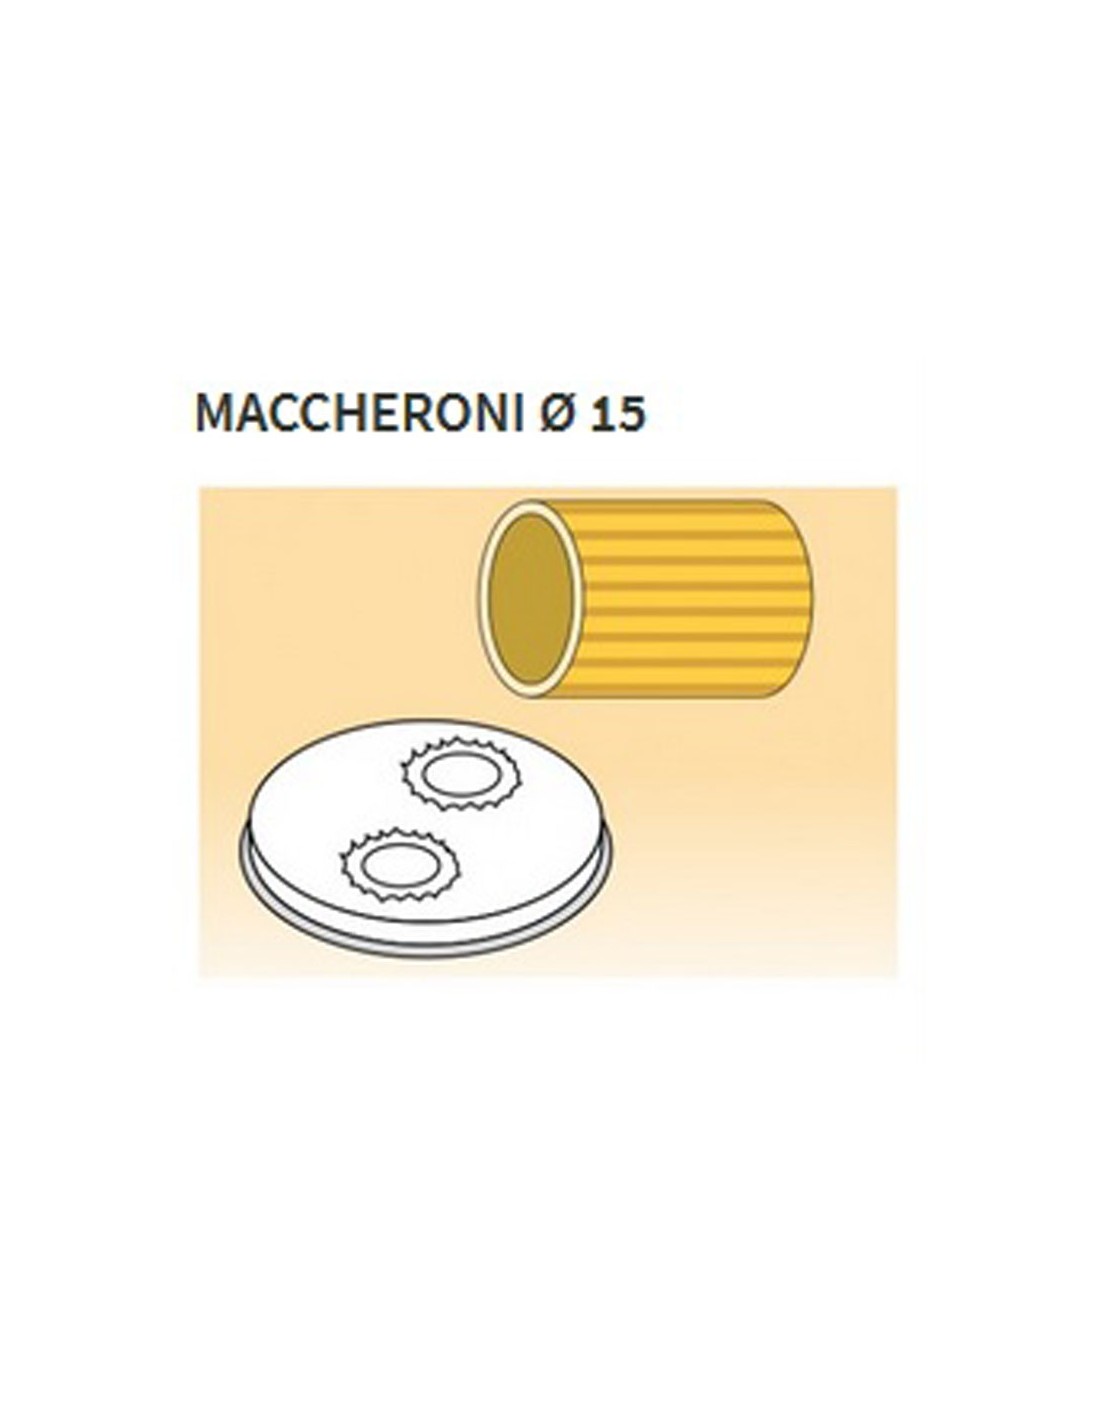 Matrices de aleación de latón de varias formas - Bronce - Para máquina de pasta fresca modelo MPF25 - MPF4N - Maccheroni Ø 15 mm